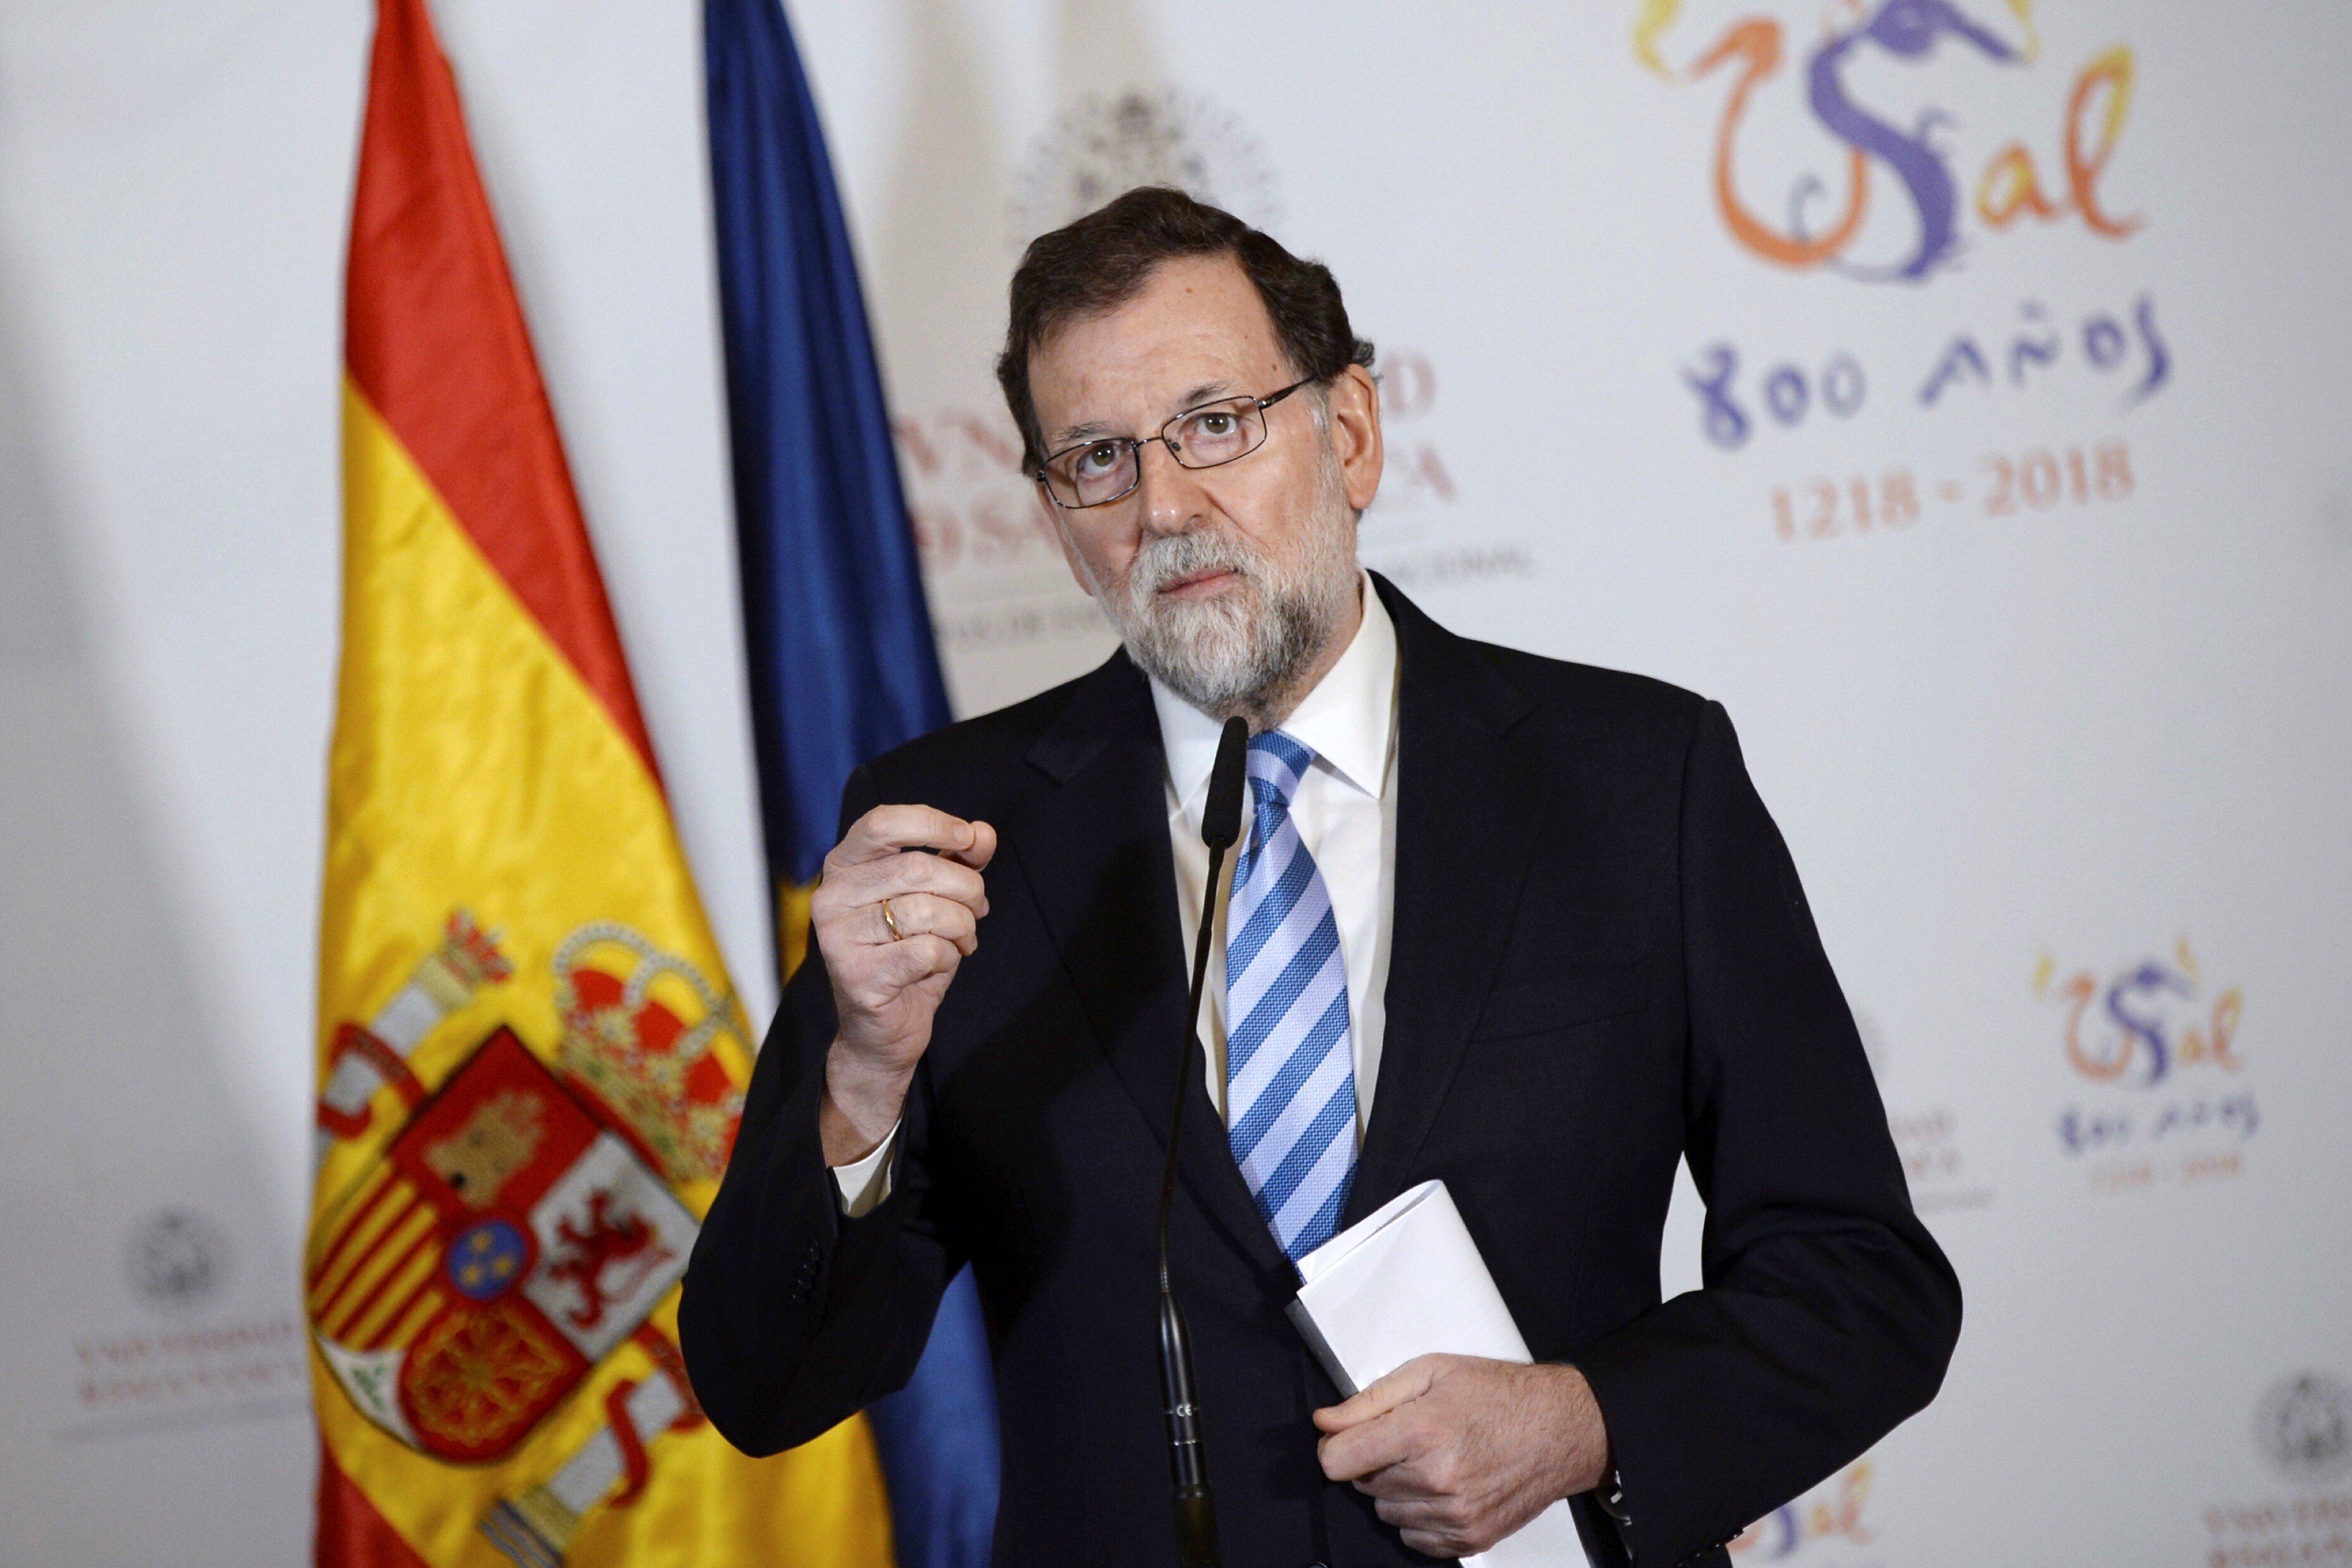 Rajoy tornarà a aplicar el 155 després del 21-D?